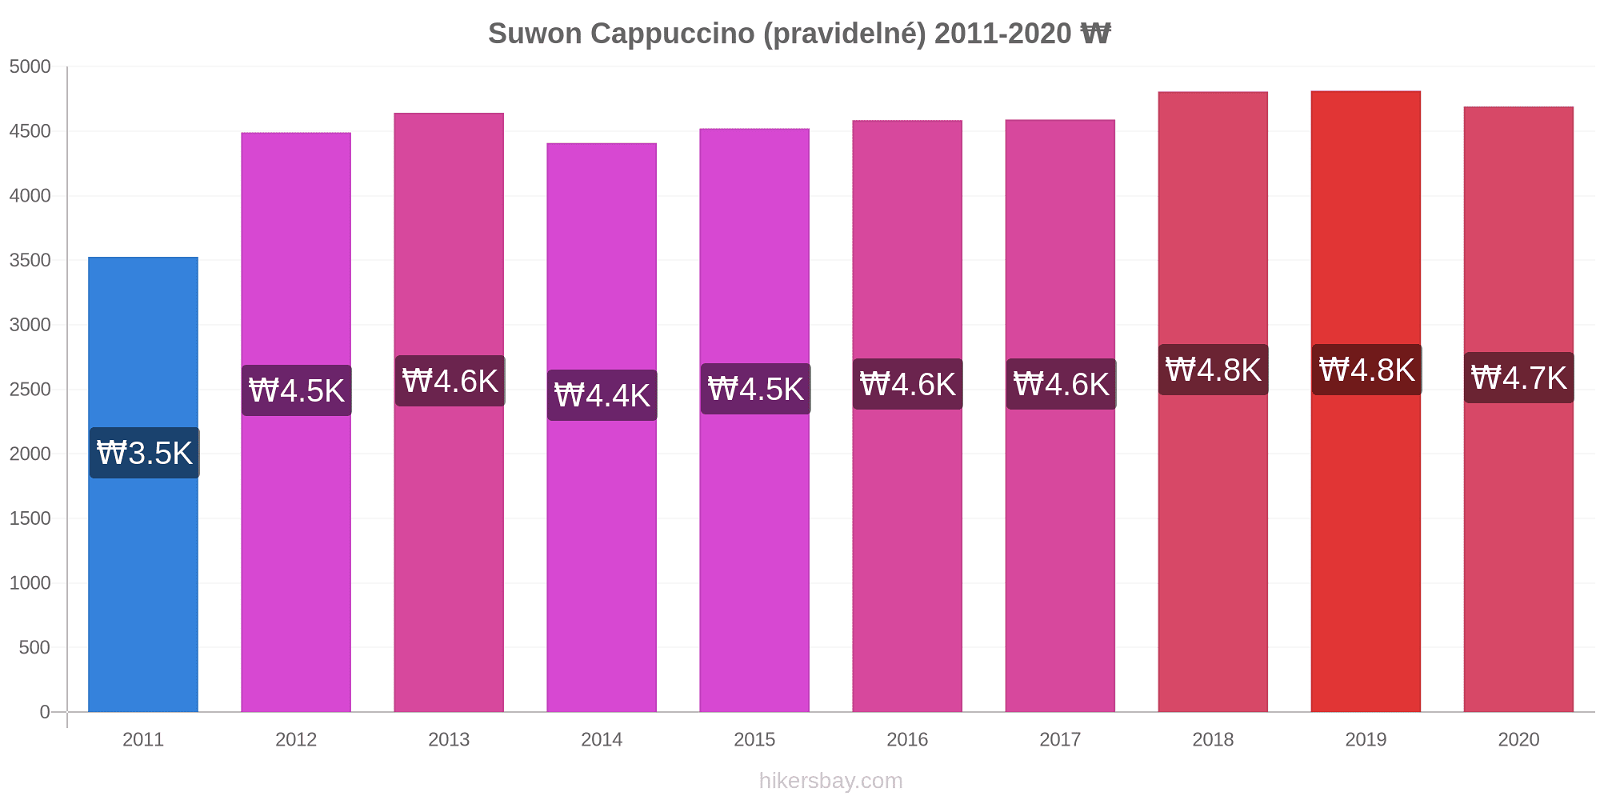 Suwon změny cen Cappuccino (pravidelné) hikersbay.com